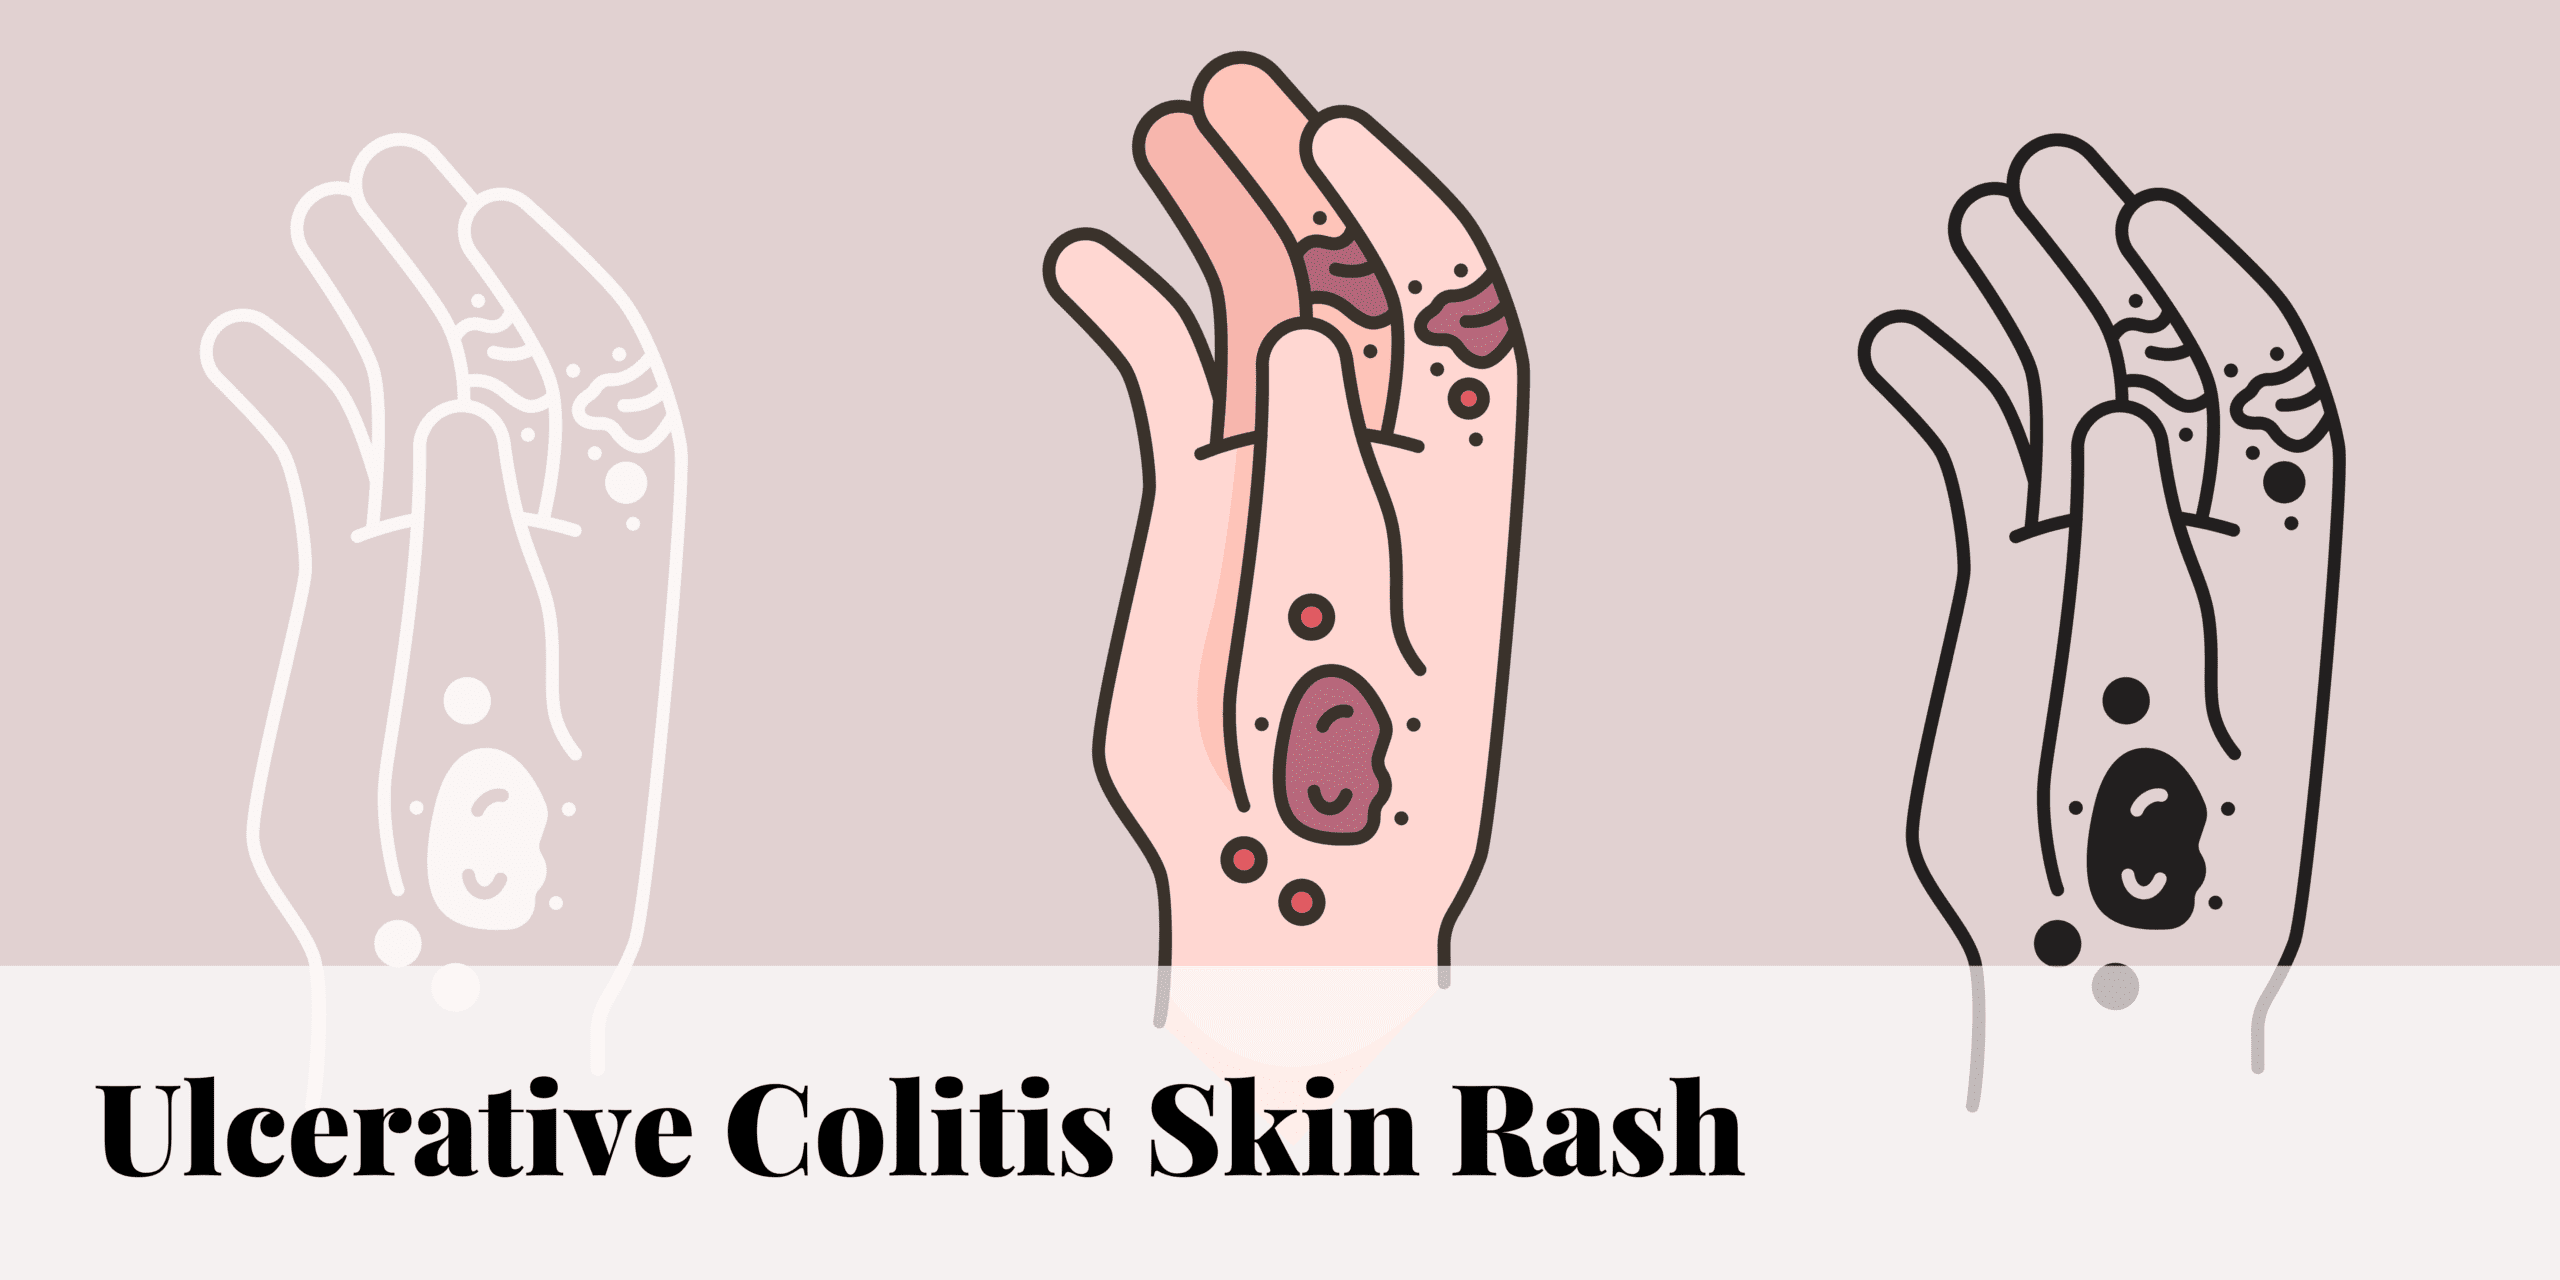 Ulcerative Colitis Skin Rash